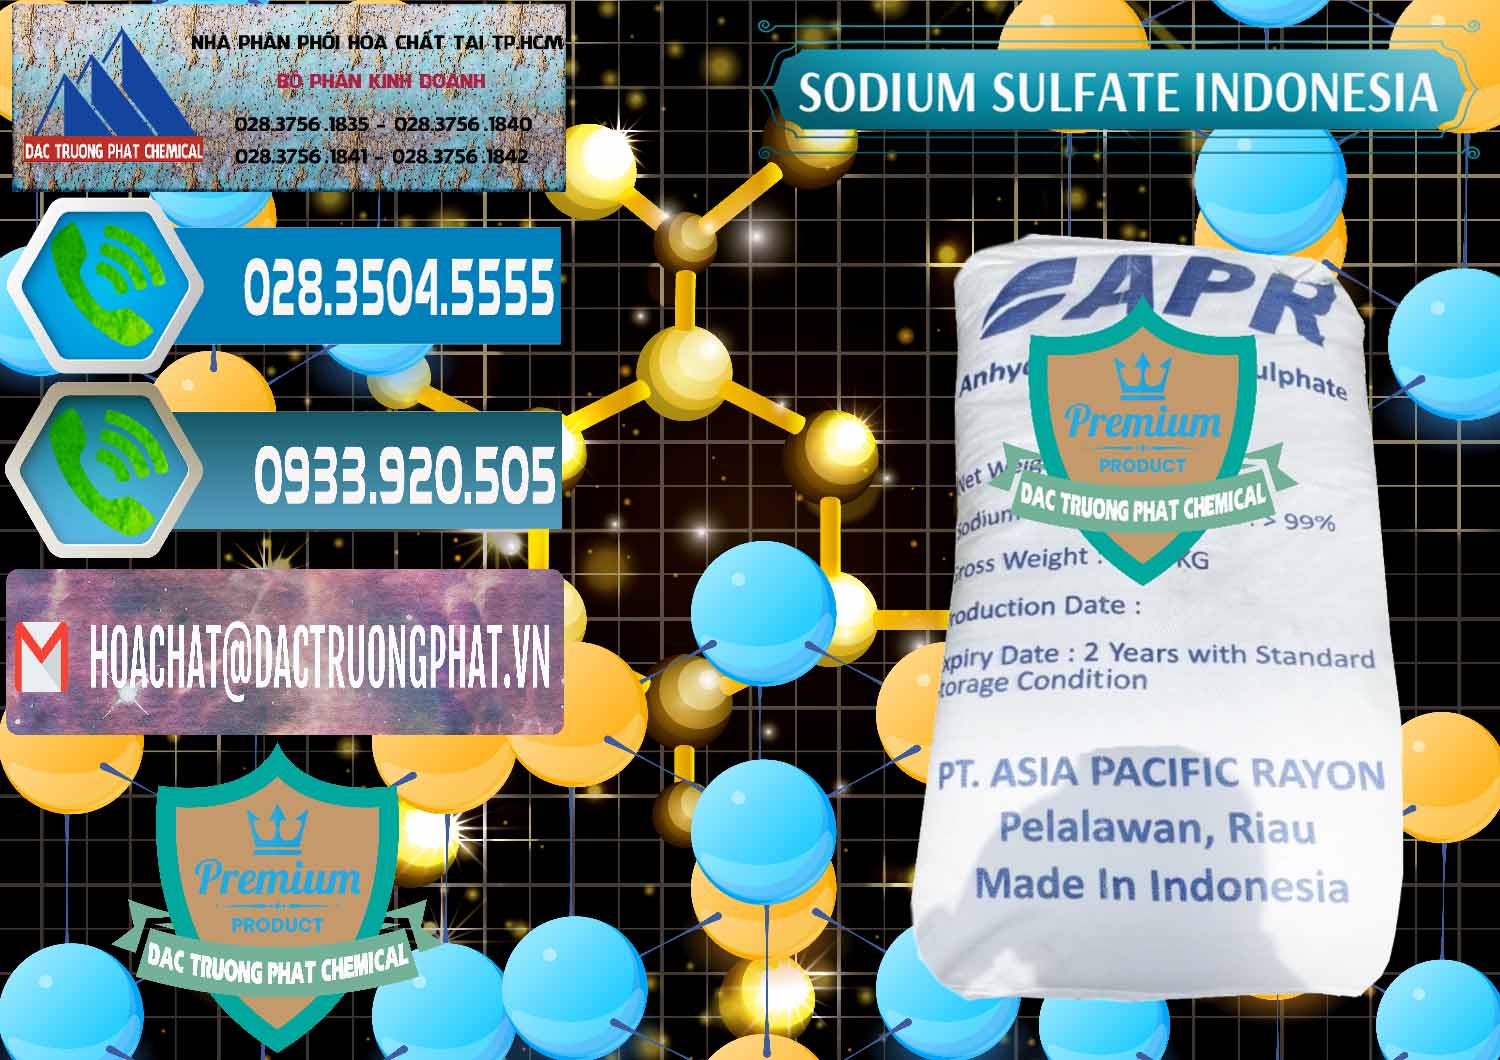 Cty chuyên cung ứng & bán Sodium Sulphate - Muối Sunfat Na2SO4 APR Indonesia - 0460 - Chuyên cung cấp và phân phối hóa chất tại TP.HCM - congtyhoachat.net